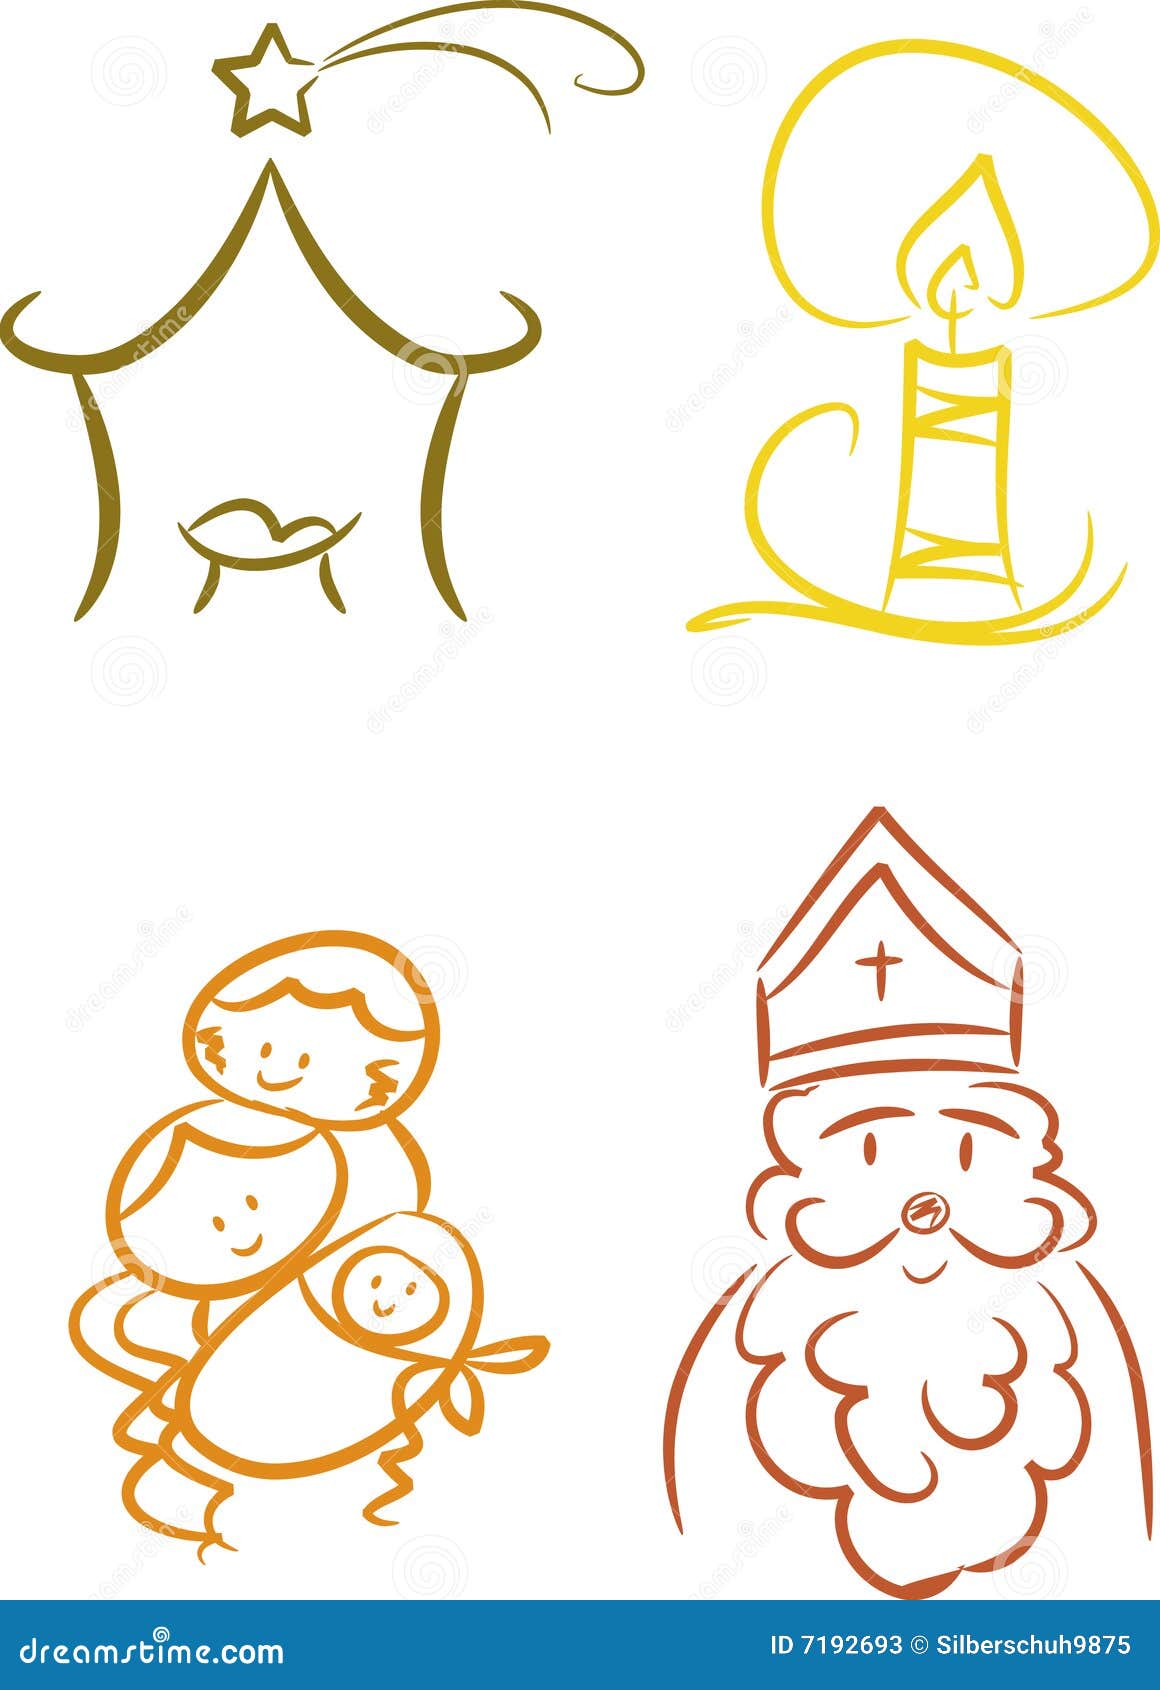 Compartir 34+ imagen simbolos cristianos de la navidad